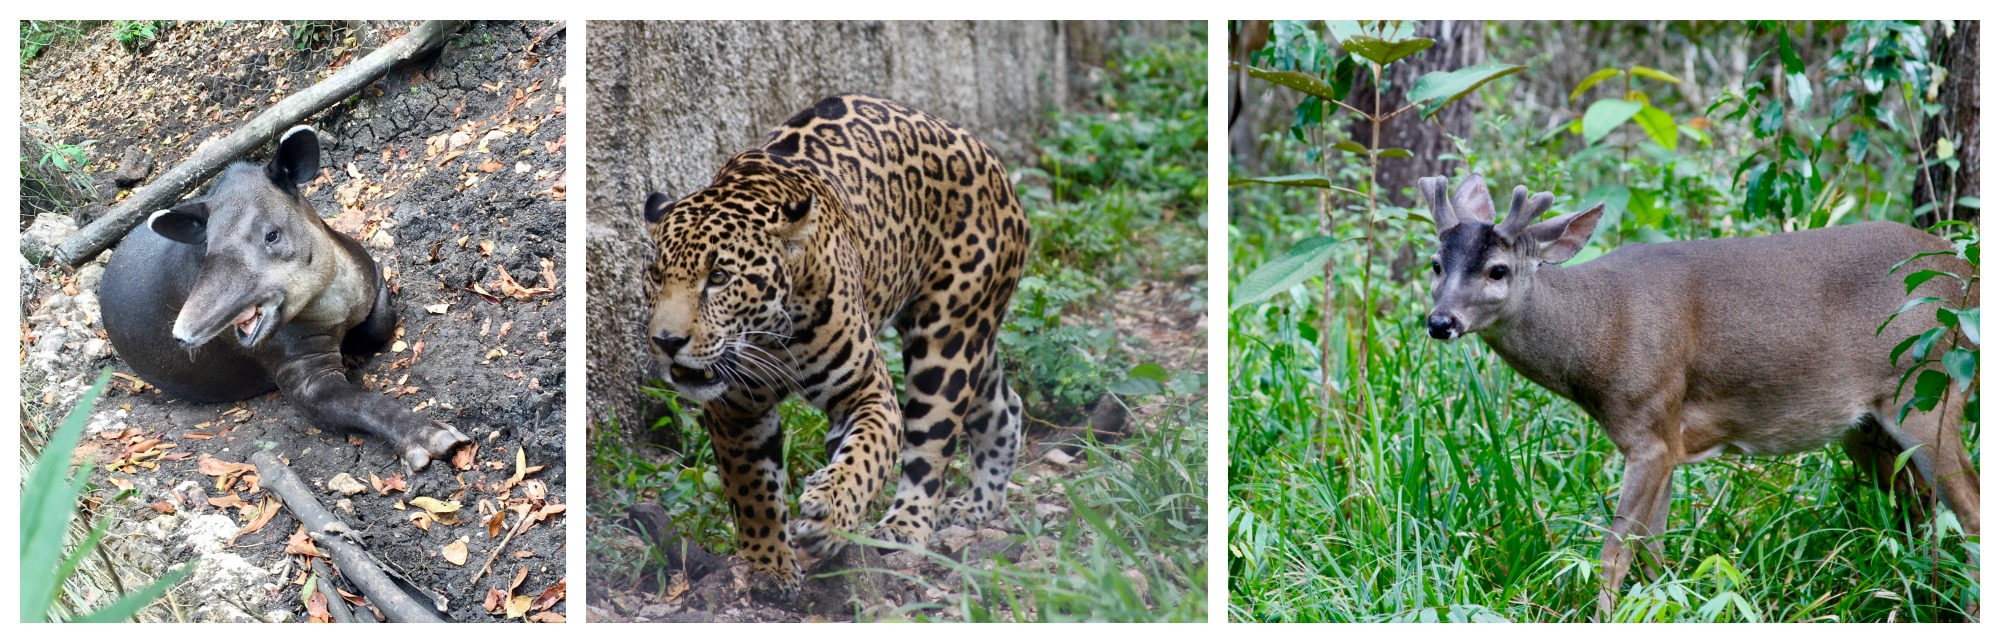 Animals at Las Lagunas hotel's natural reserve